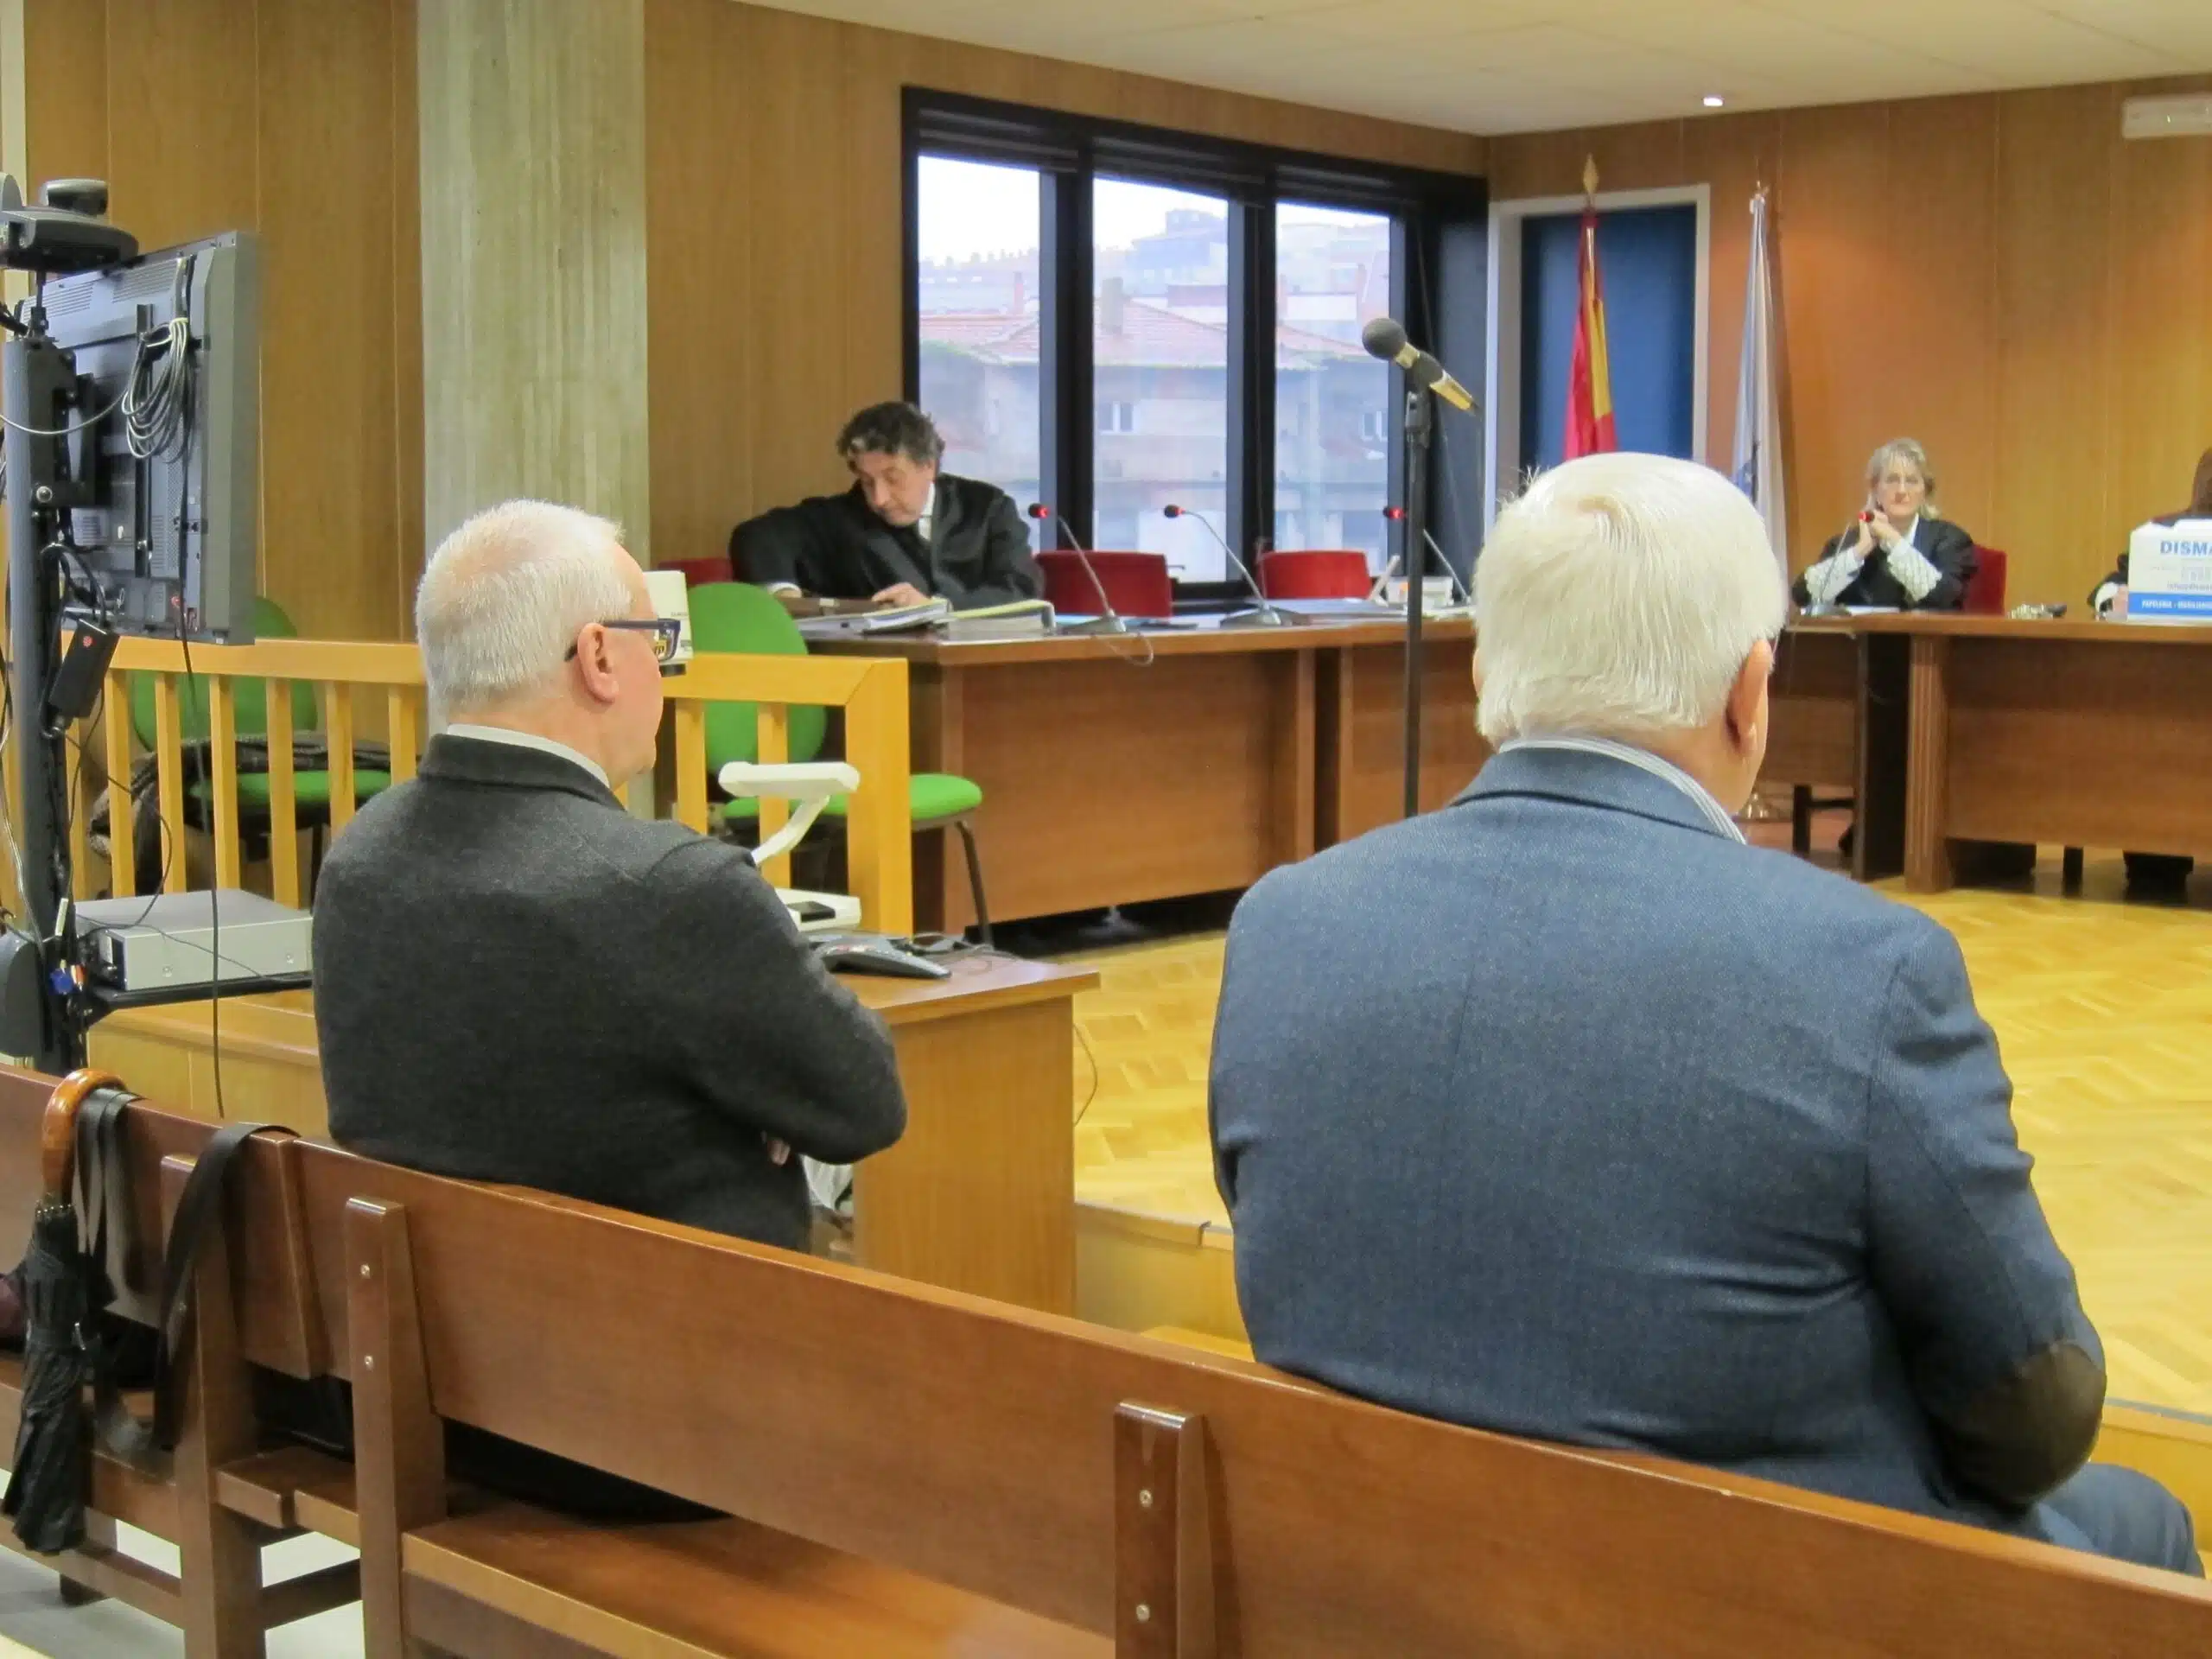 Un exfuncionario de Vigo condenado pide la revisión de su pena apelando al cambio del delito de malversación